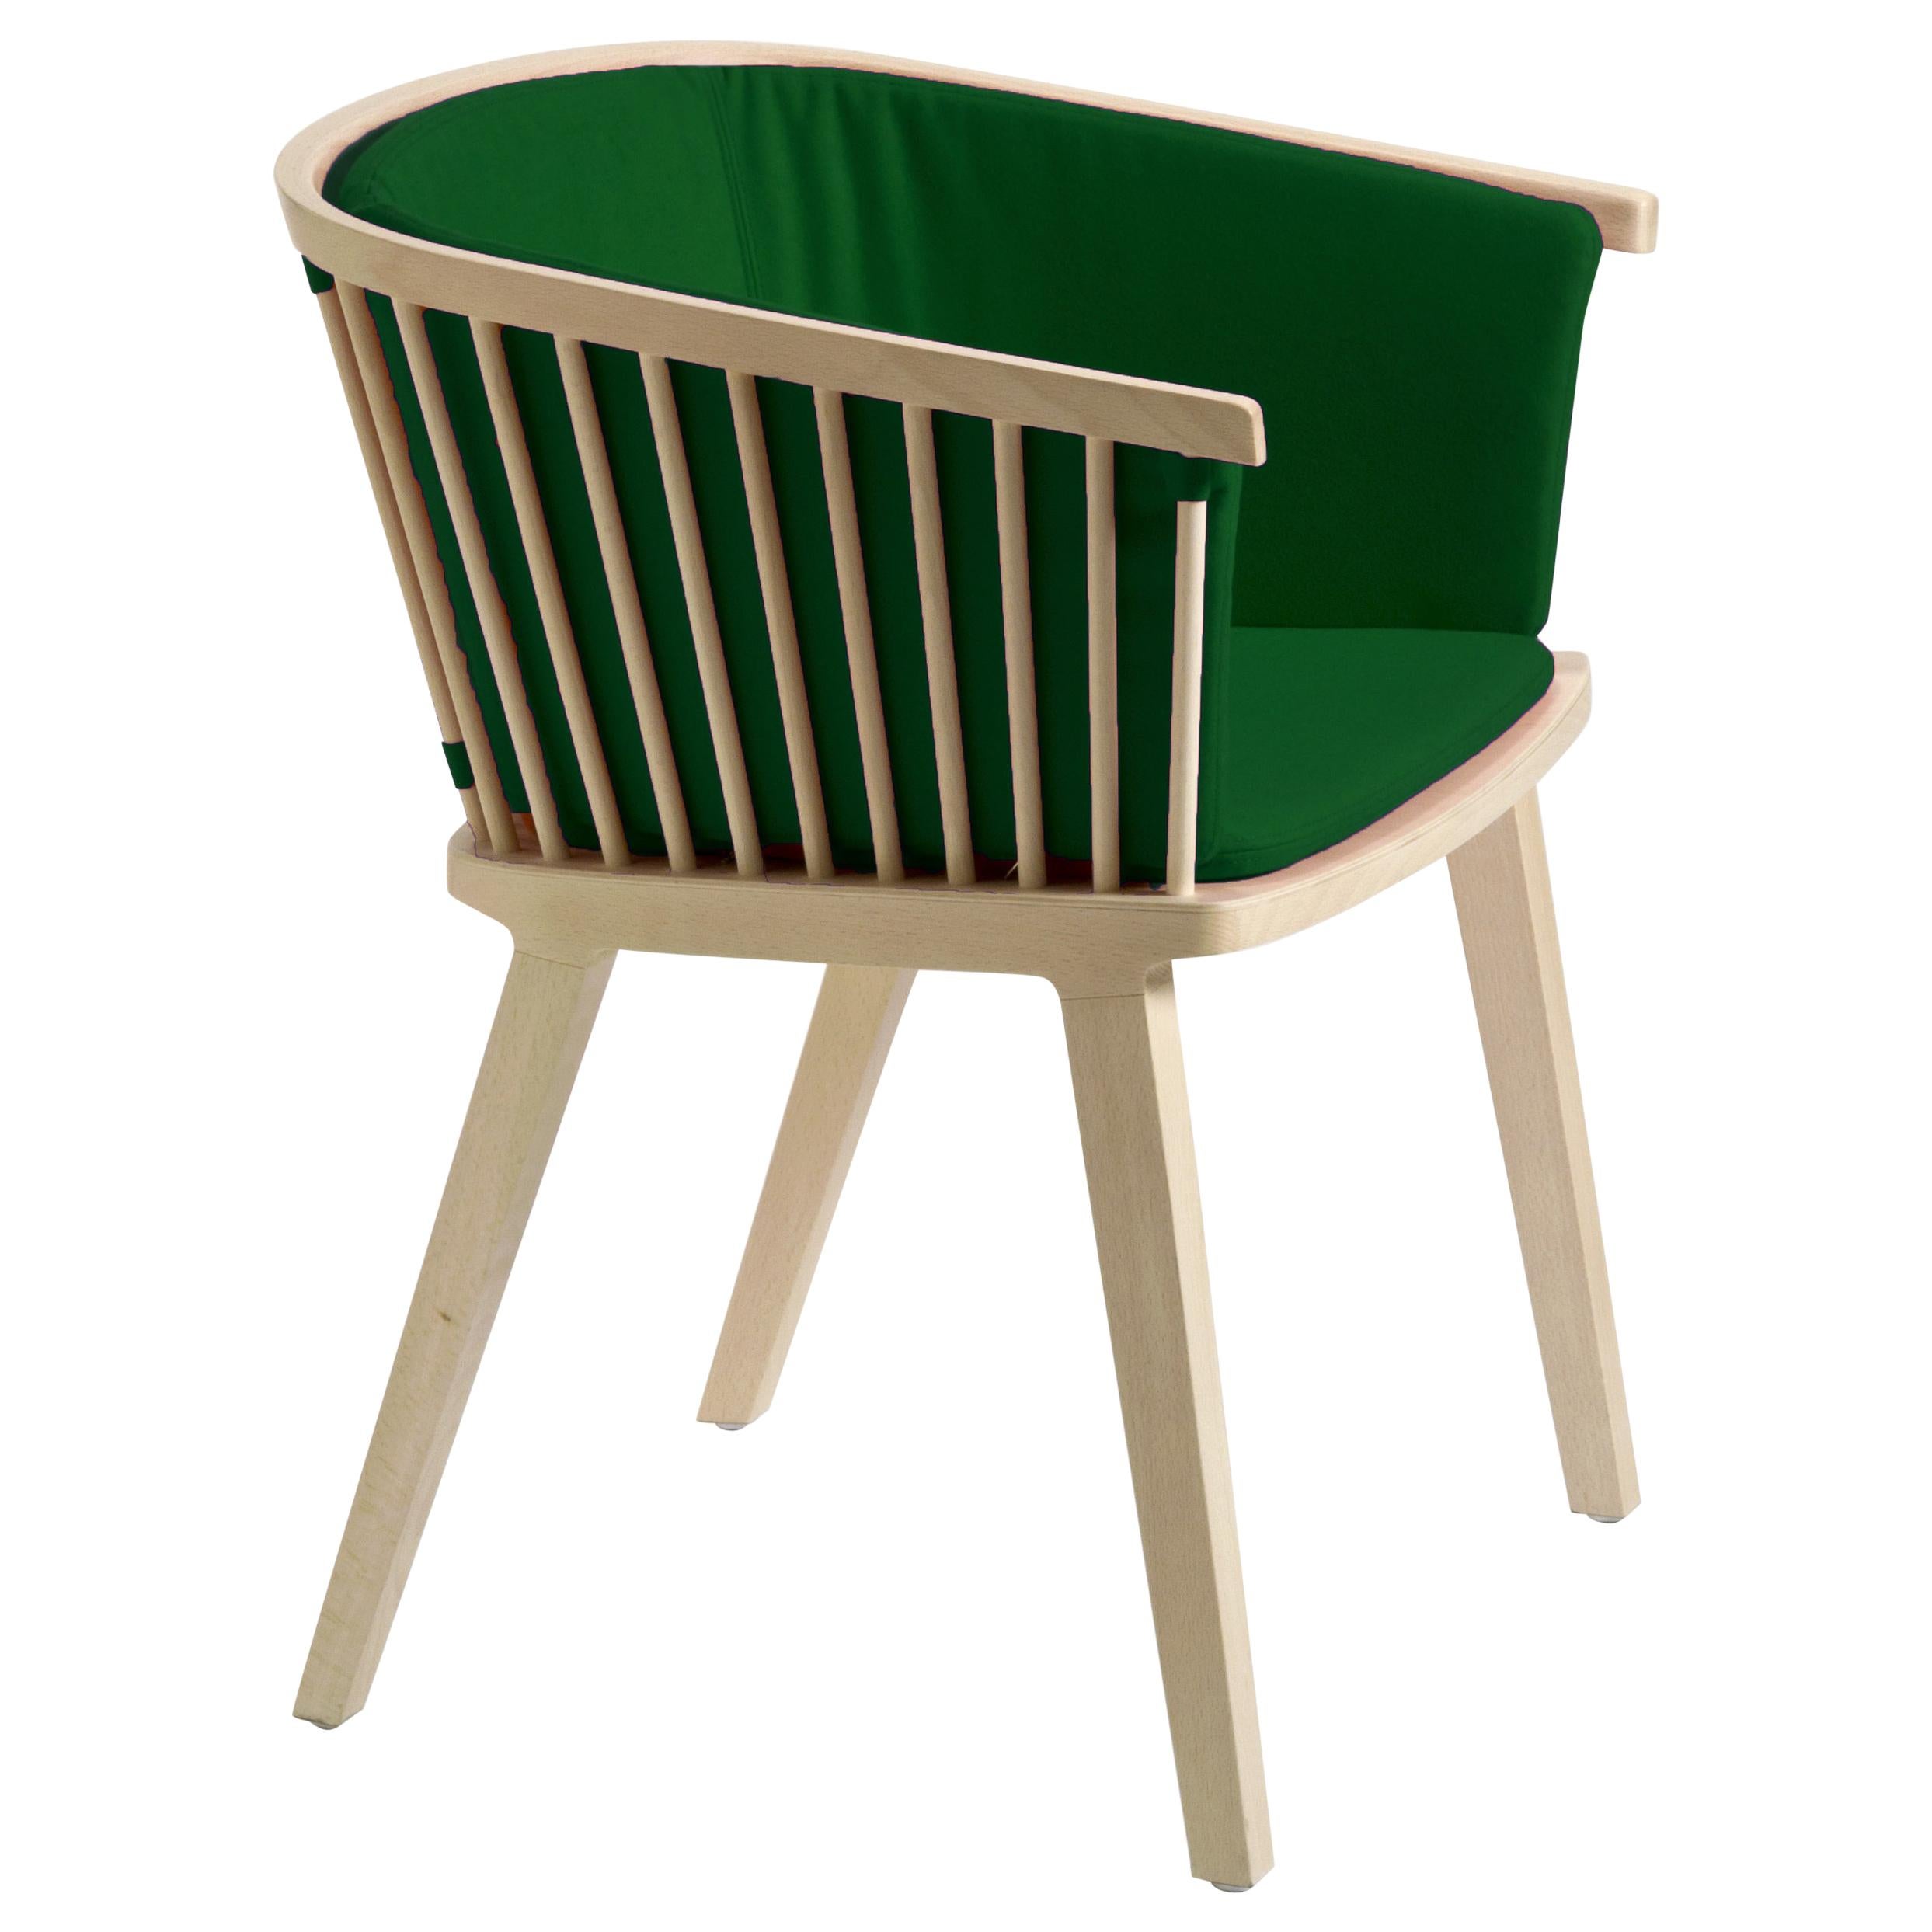 Secreto Armchair in Beechwood Emerald Green Velvet Upholstery, Made in Italy For Sale